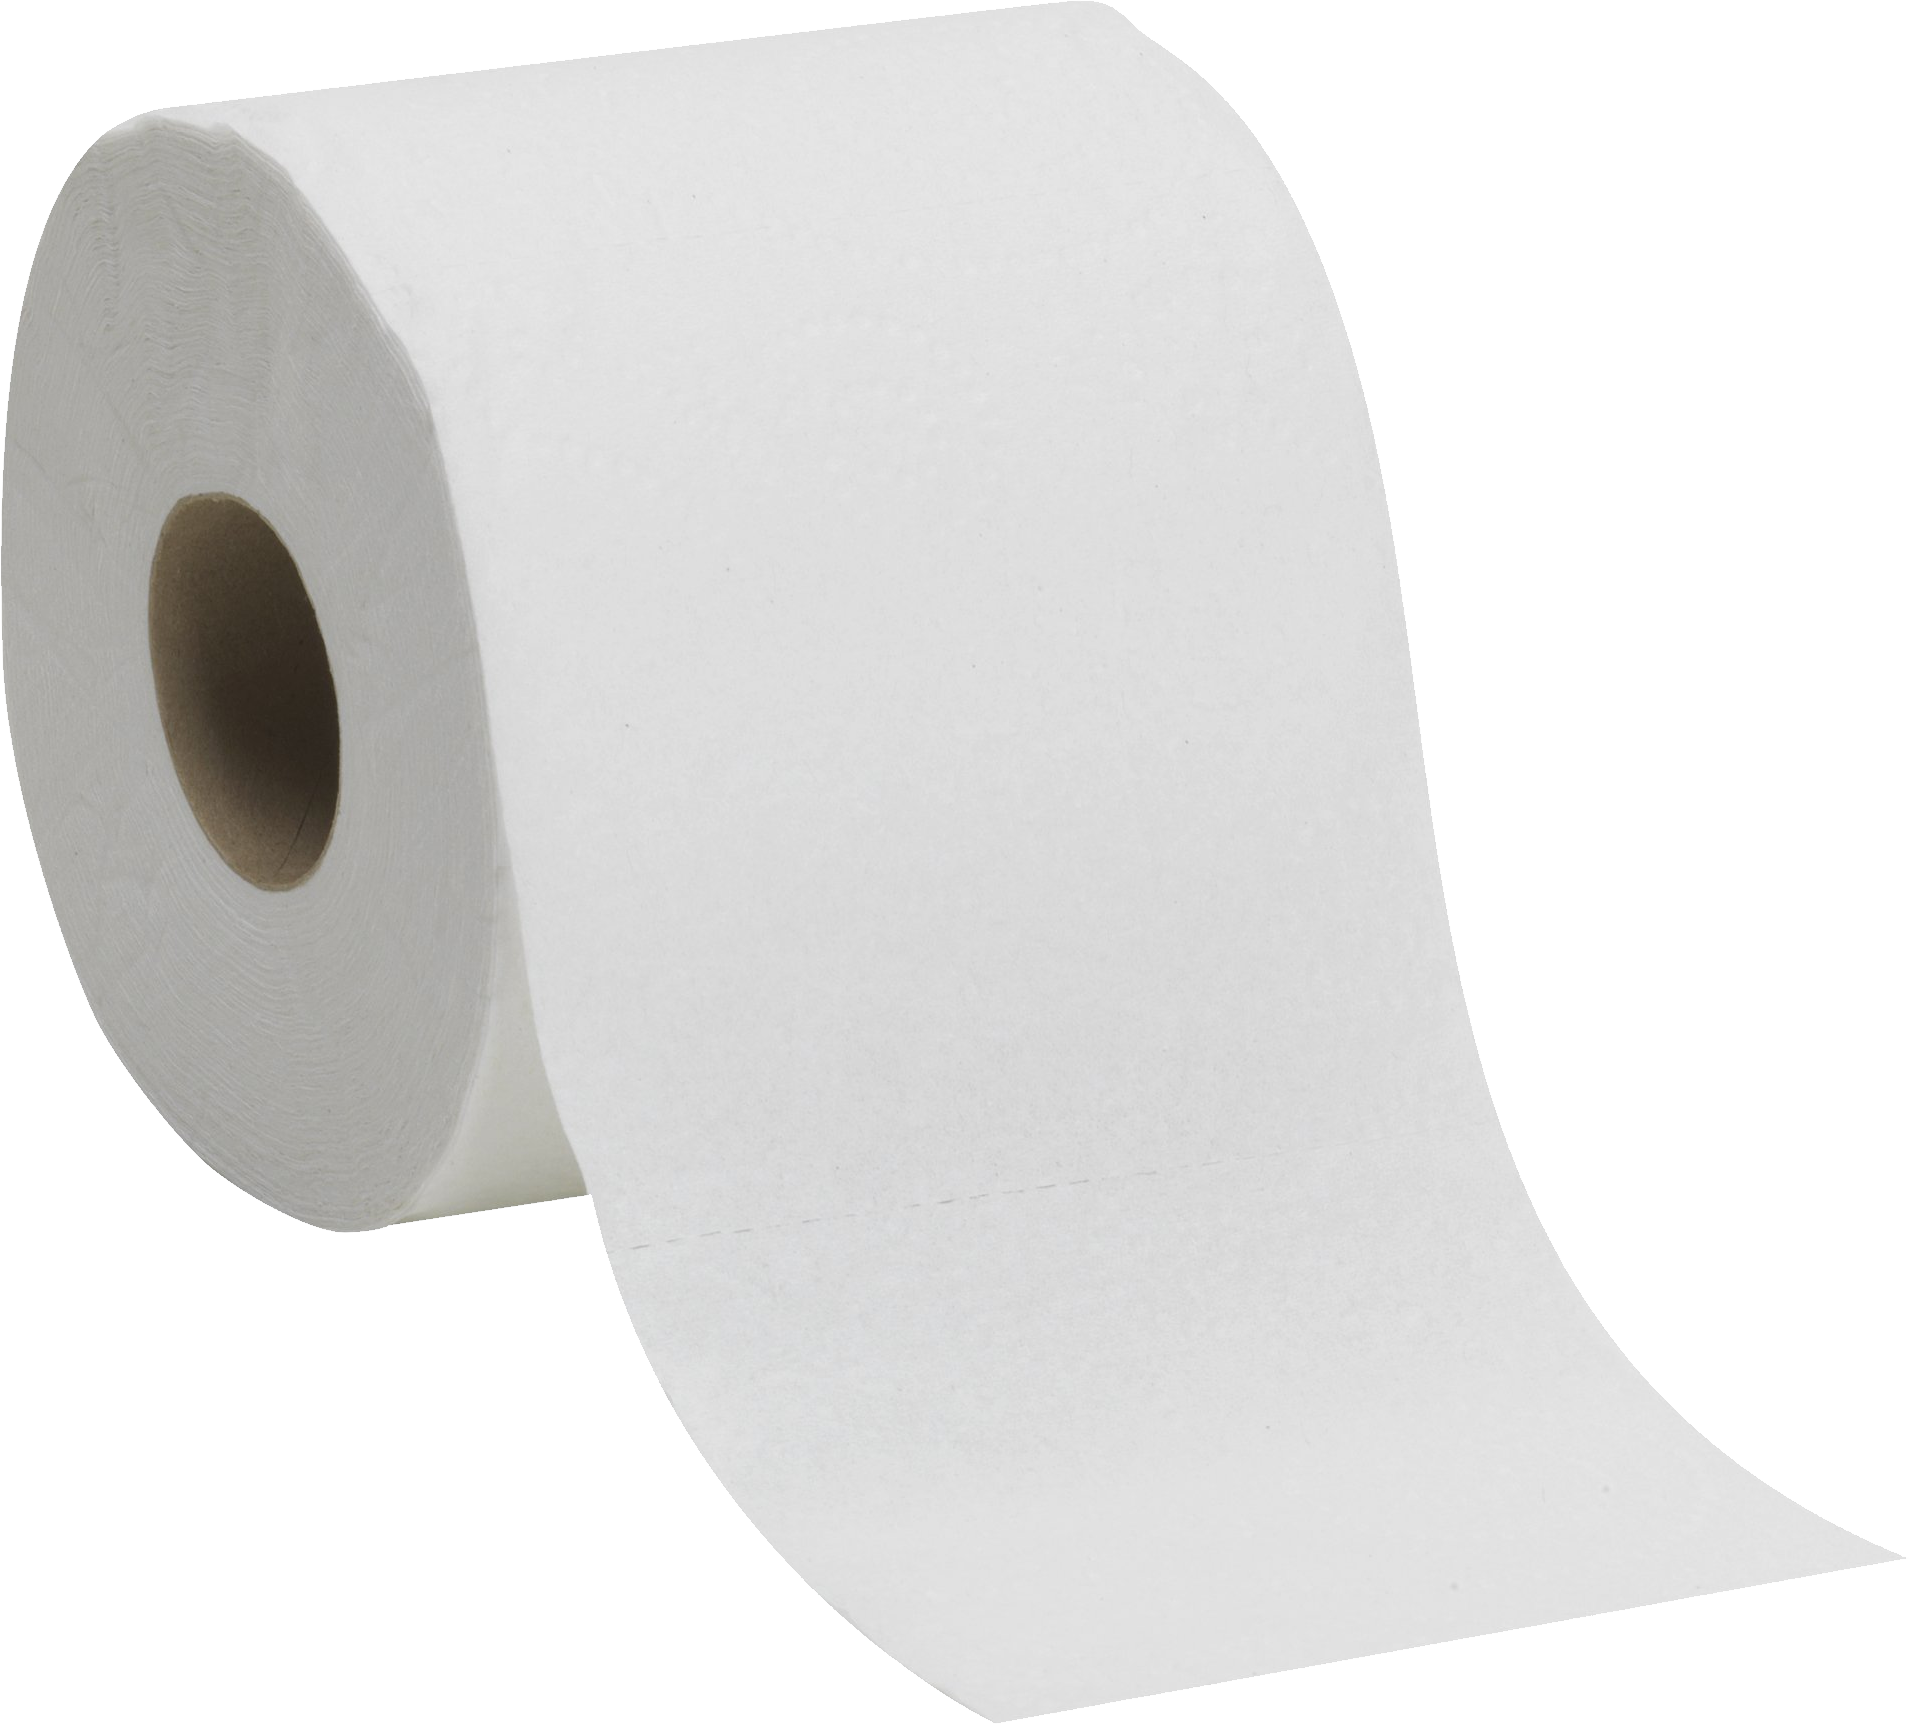 Bathroom tissue paper